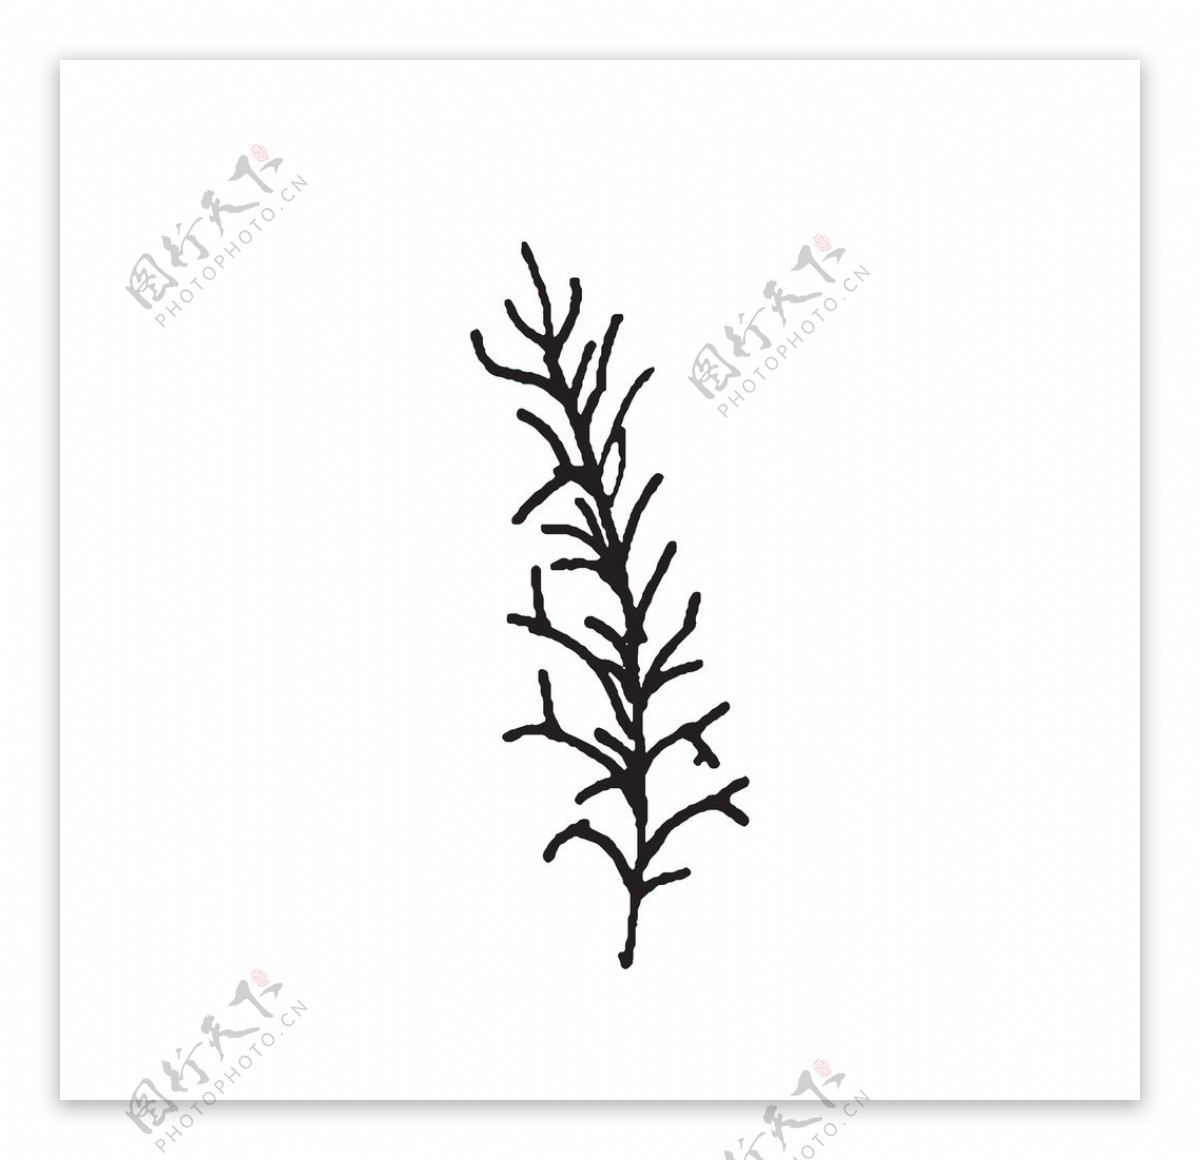 黑白涂鸦植物